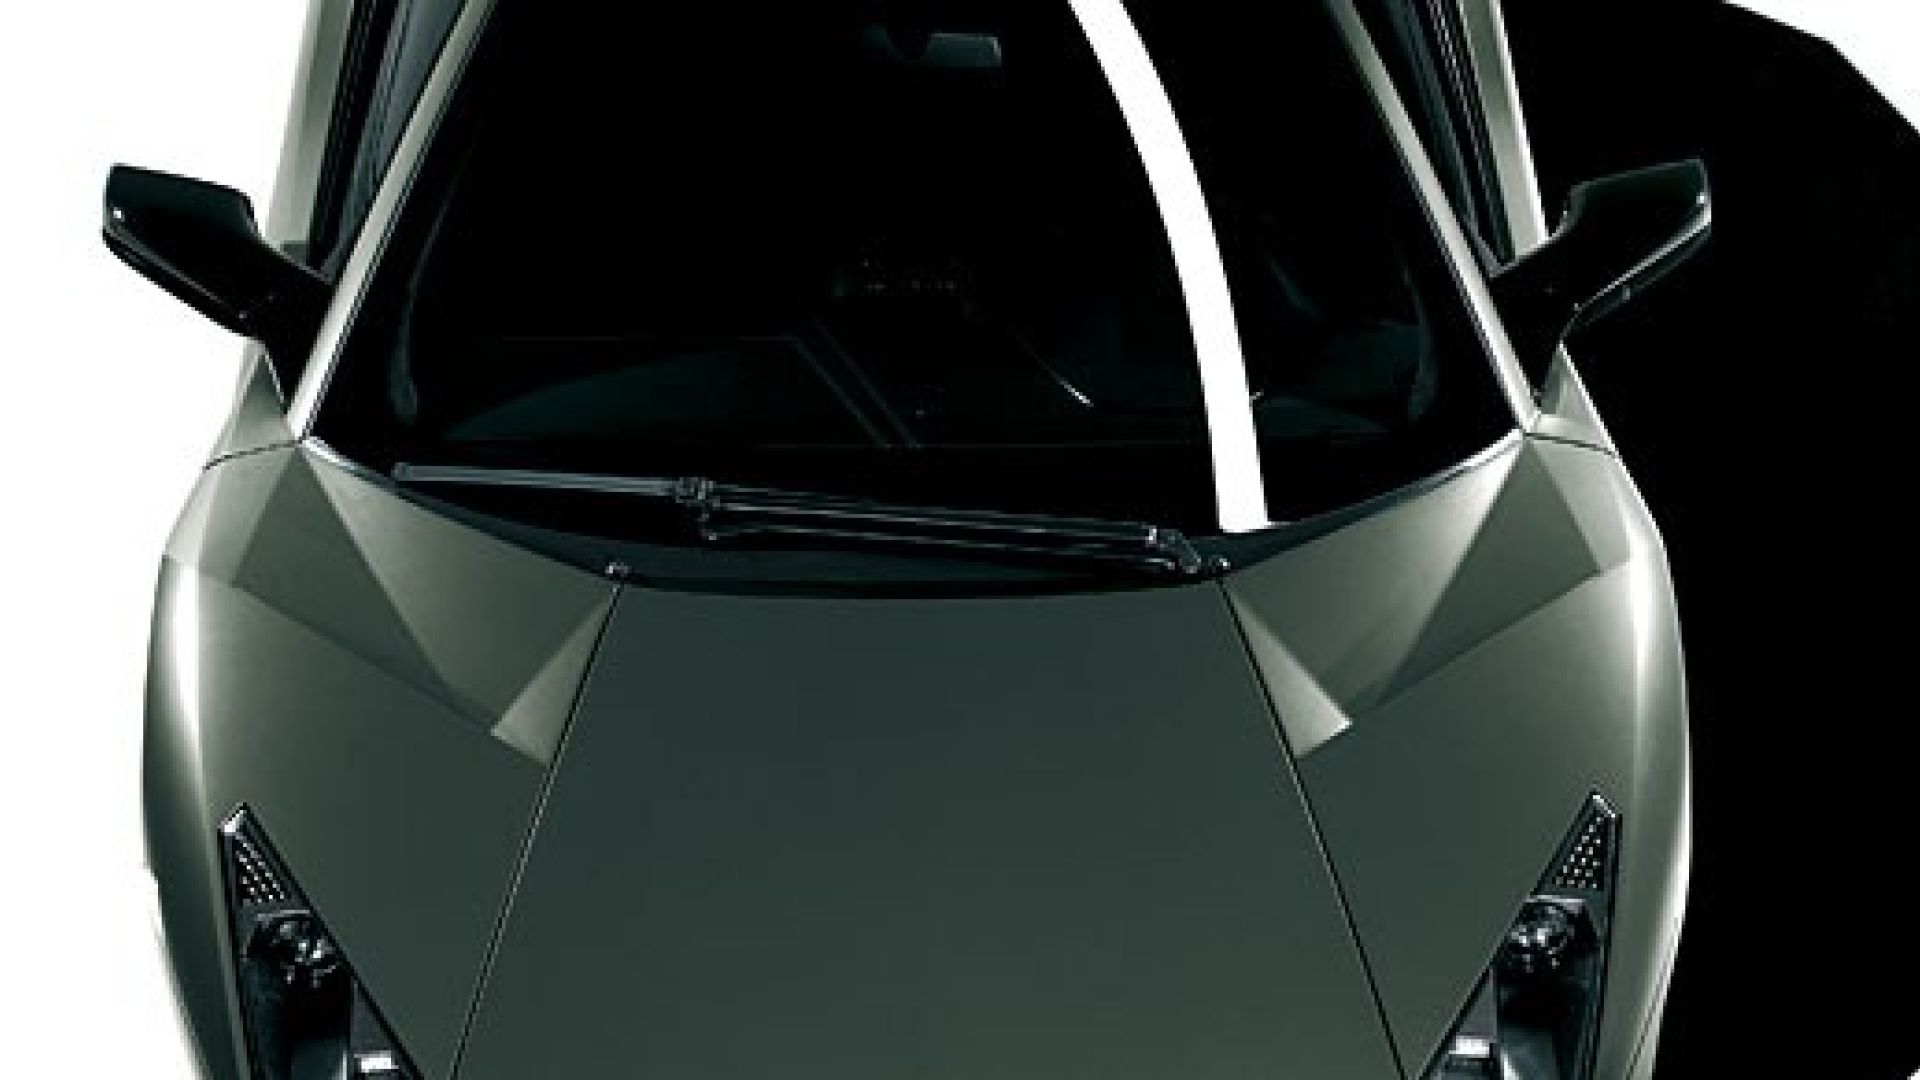 Anteprima: - Lamborghini Reventón - MotorBox